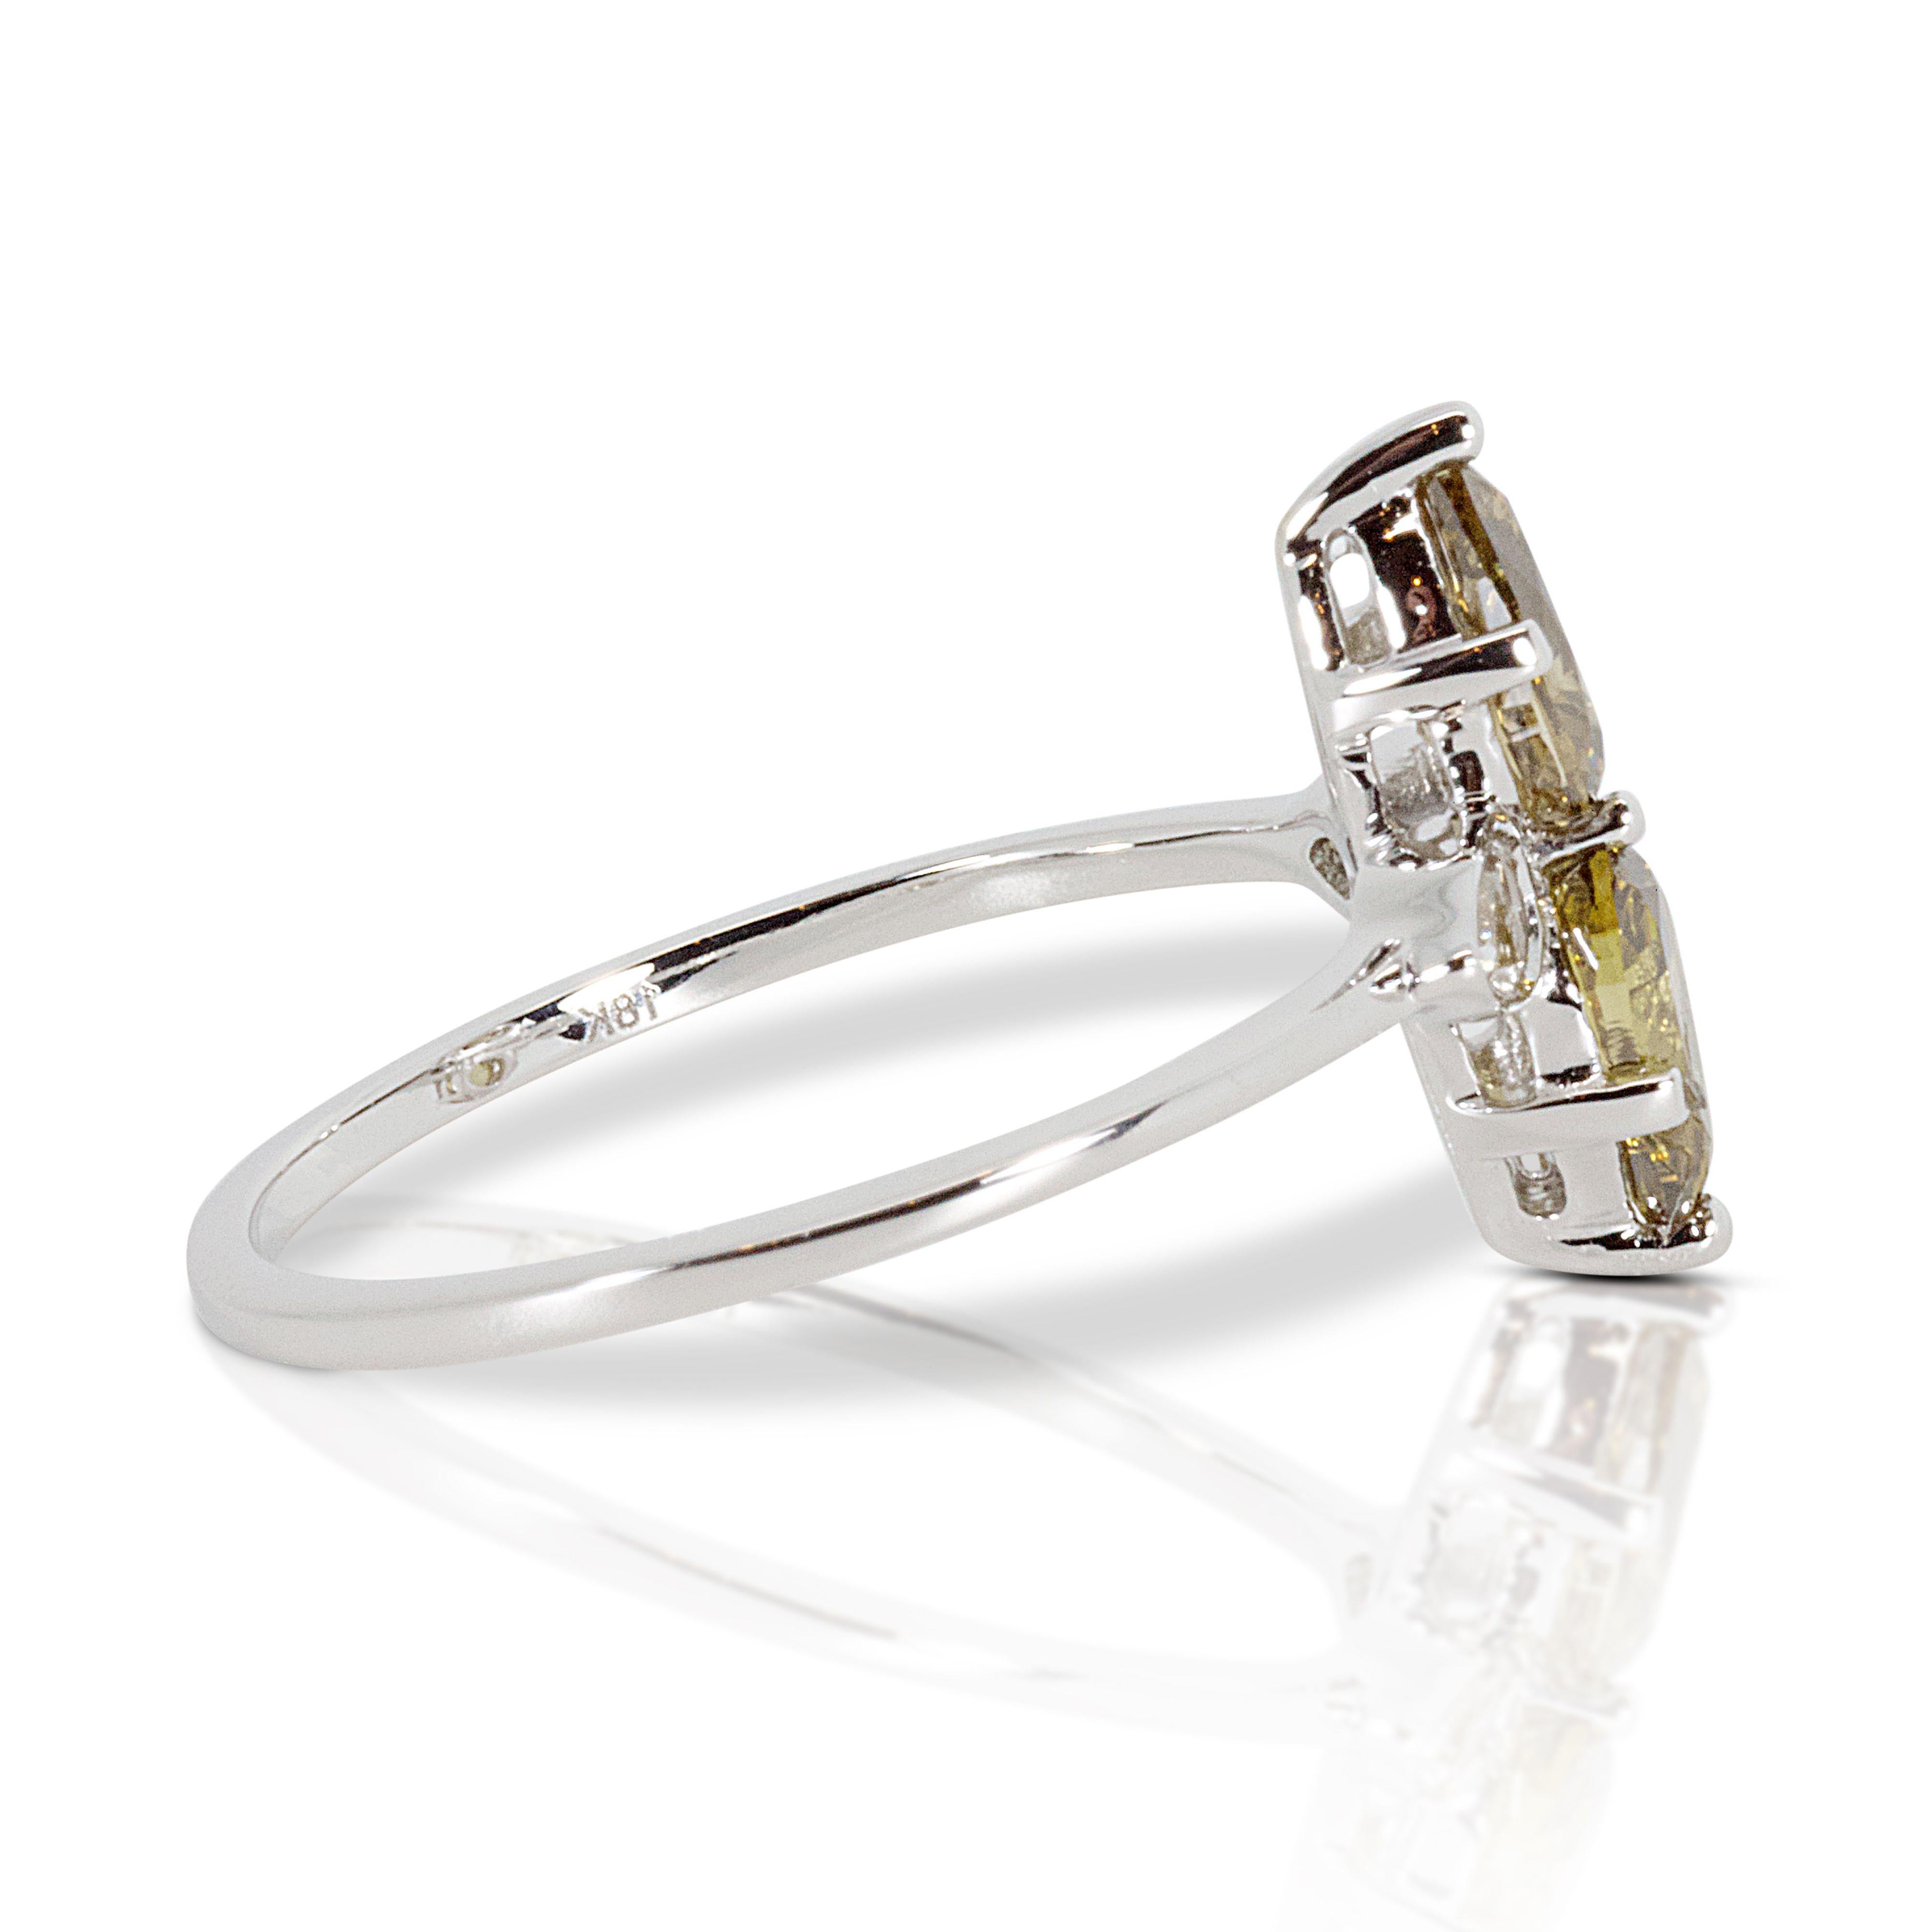 Elegant 18k White Gold Ring with 1.13 ct Natural Diamonds- NGI cert For Sale 2